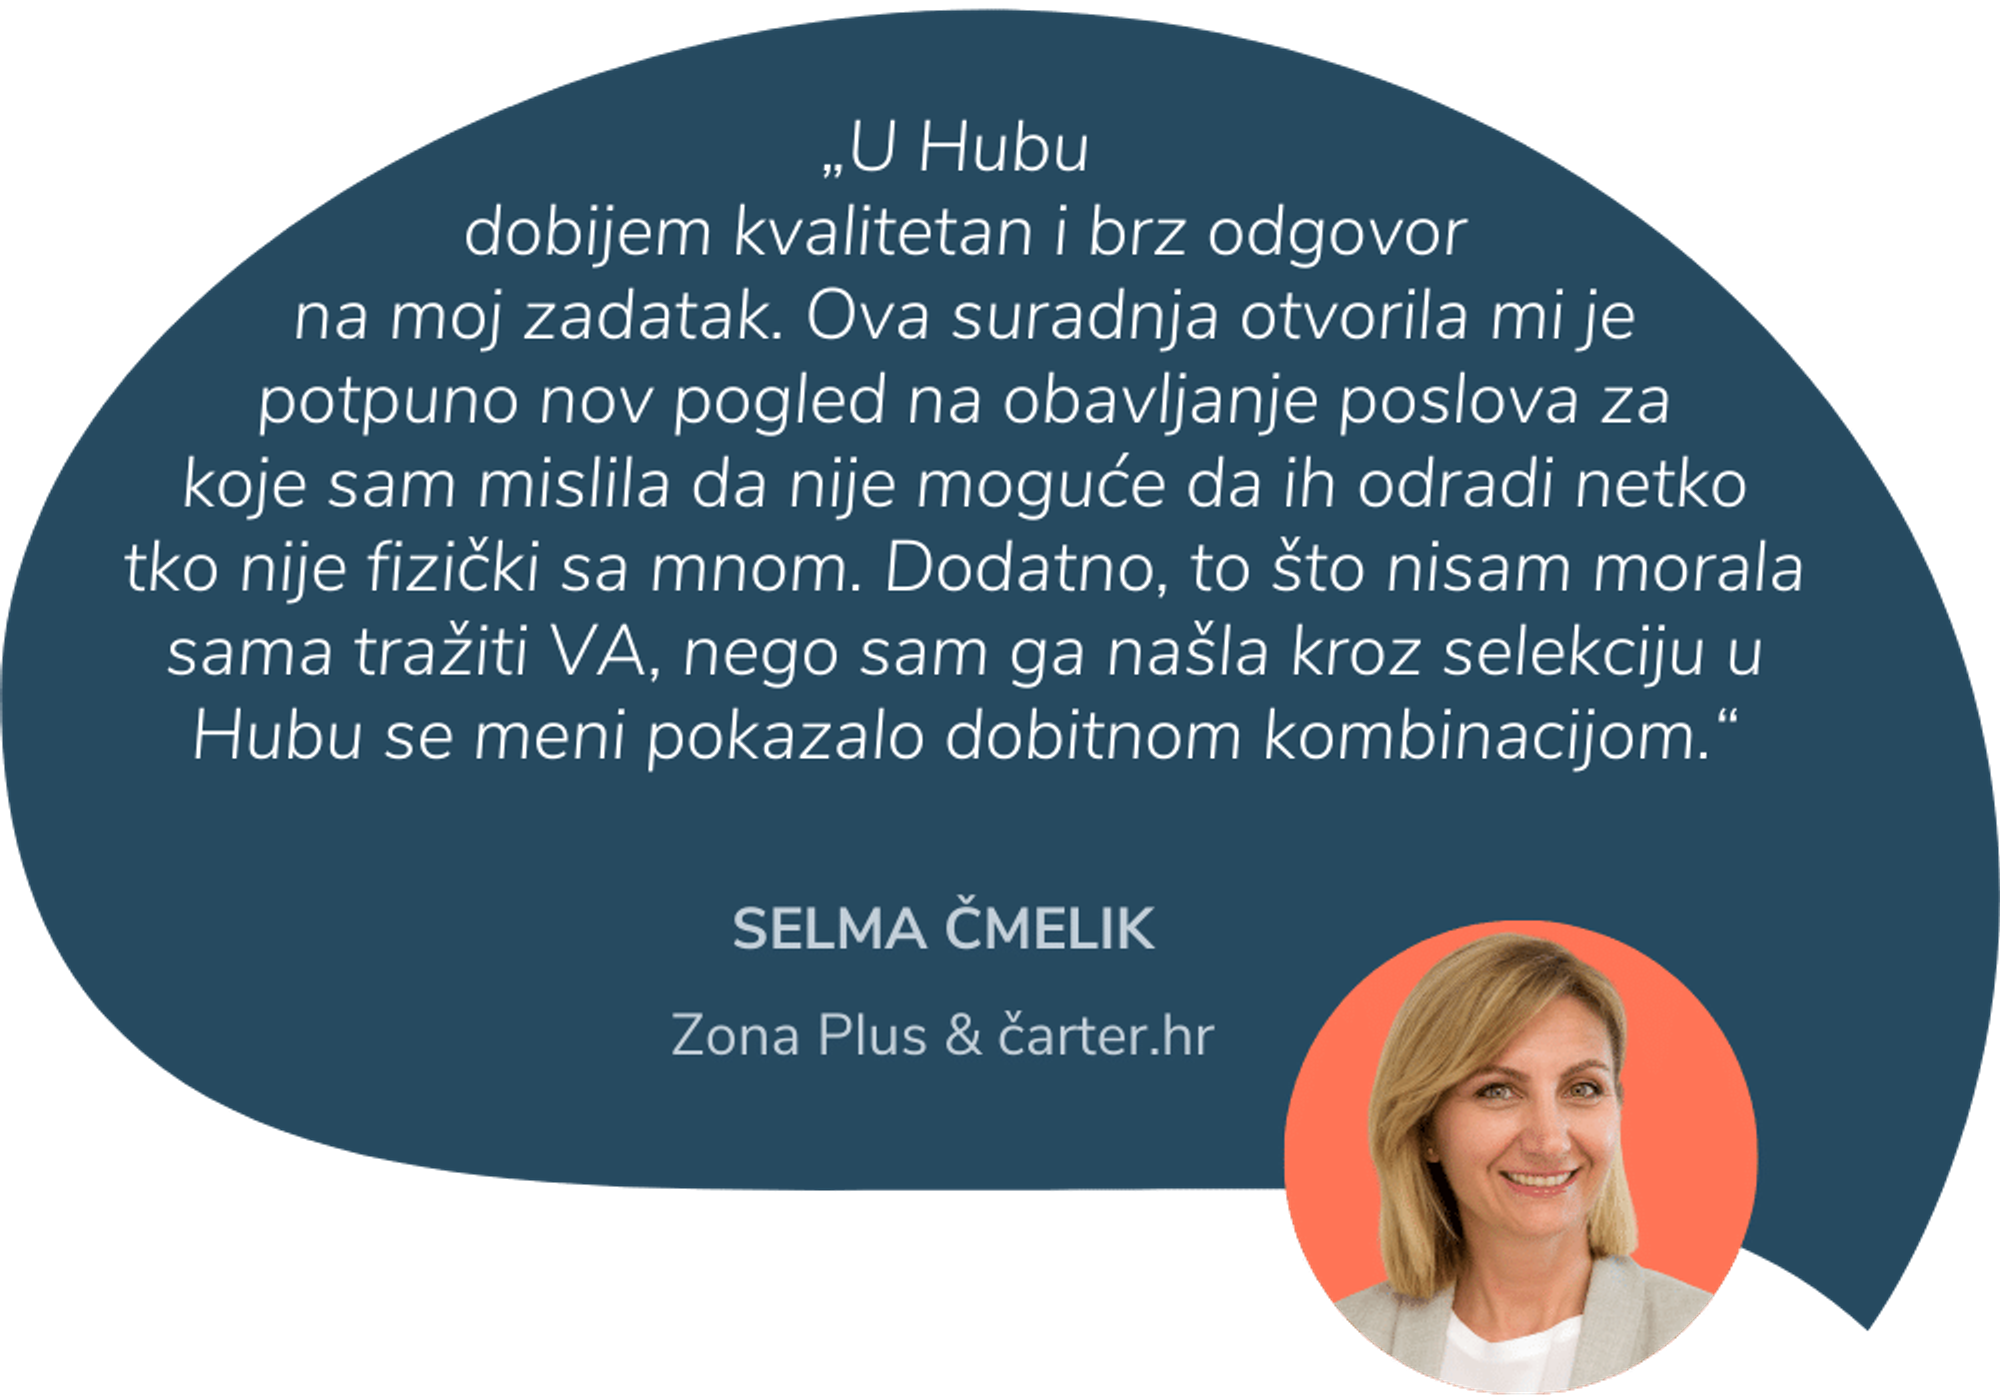 Selma Čmelik vlasnica je agencije za digitalni marketing Zona plus i pokretačica portala čarter.hr. Asistenti Go2human Huba Selmi su pomogli kod izrade i prenamjene sadržaja za web.